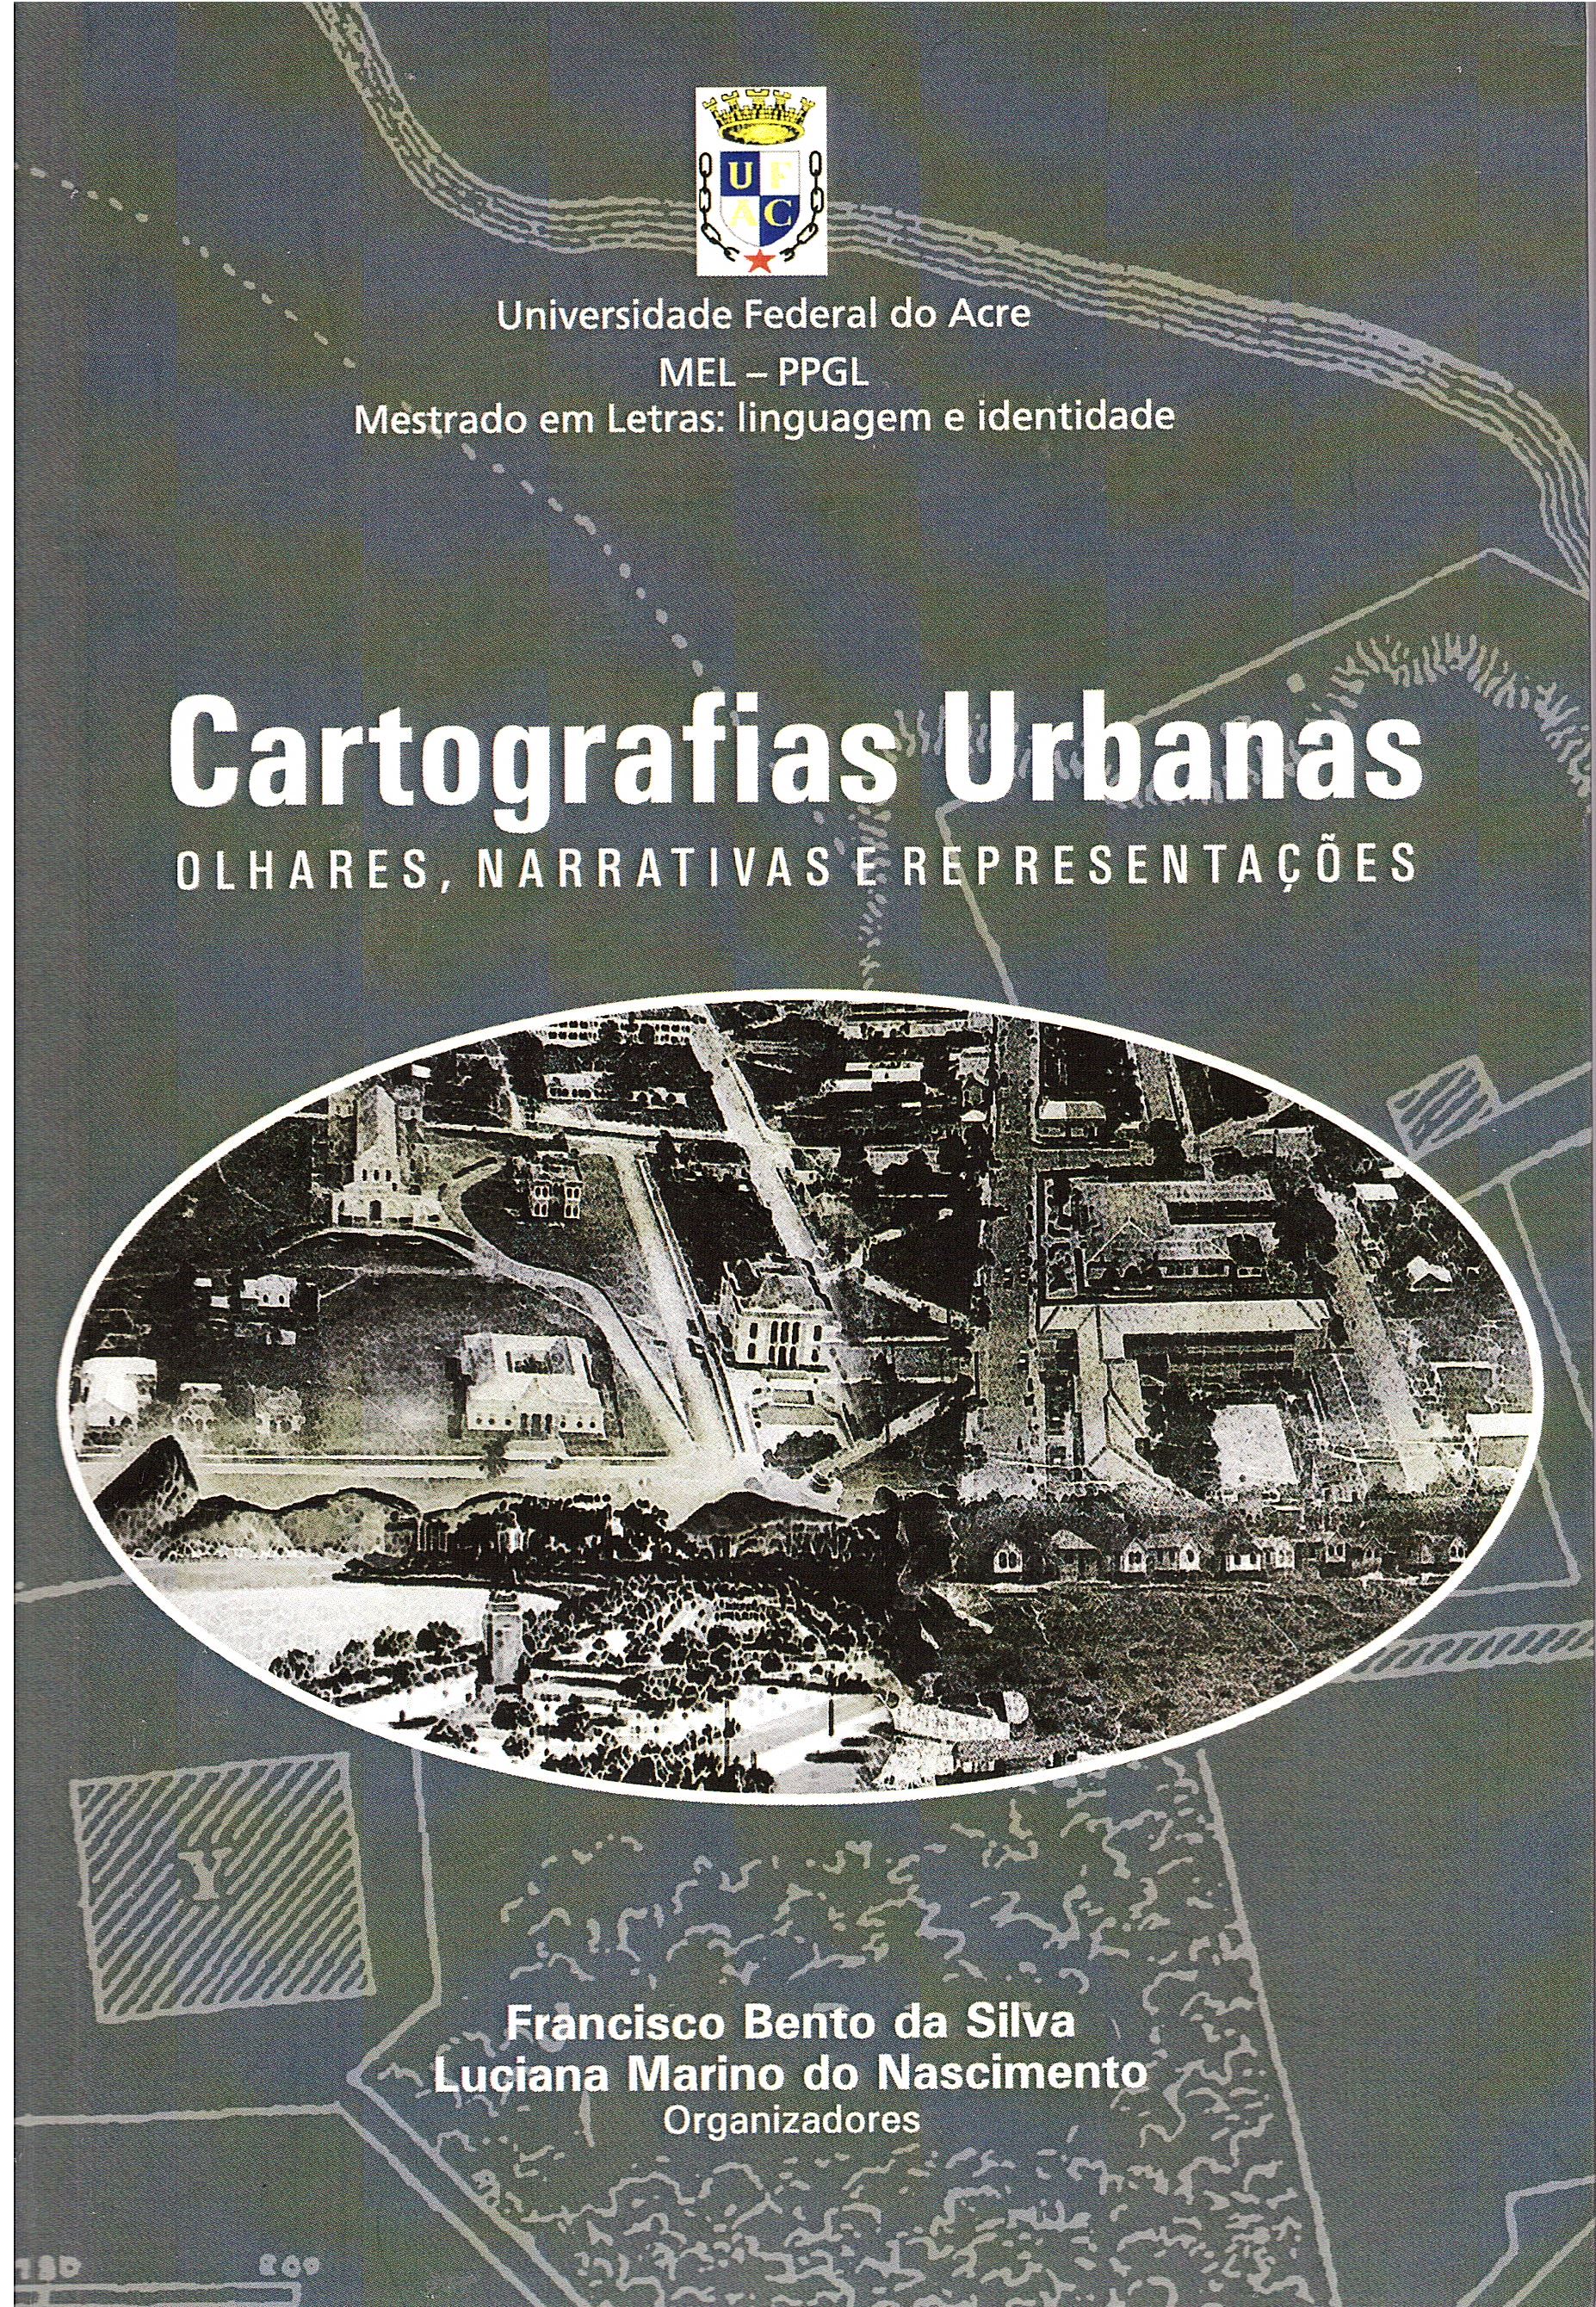 Professores da Ufac publicam livro sobre cartografias urbanas